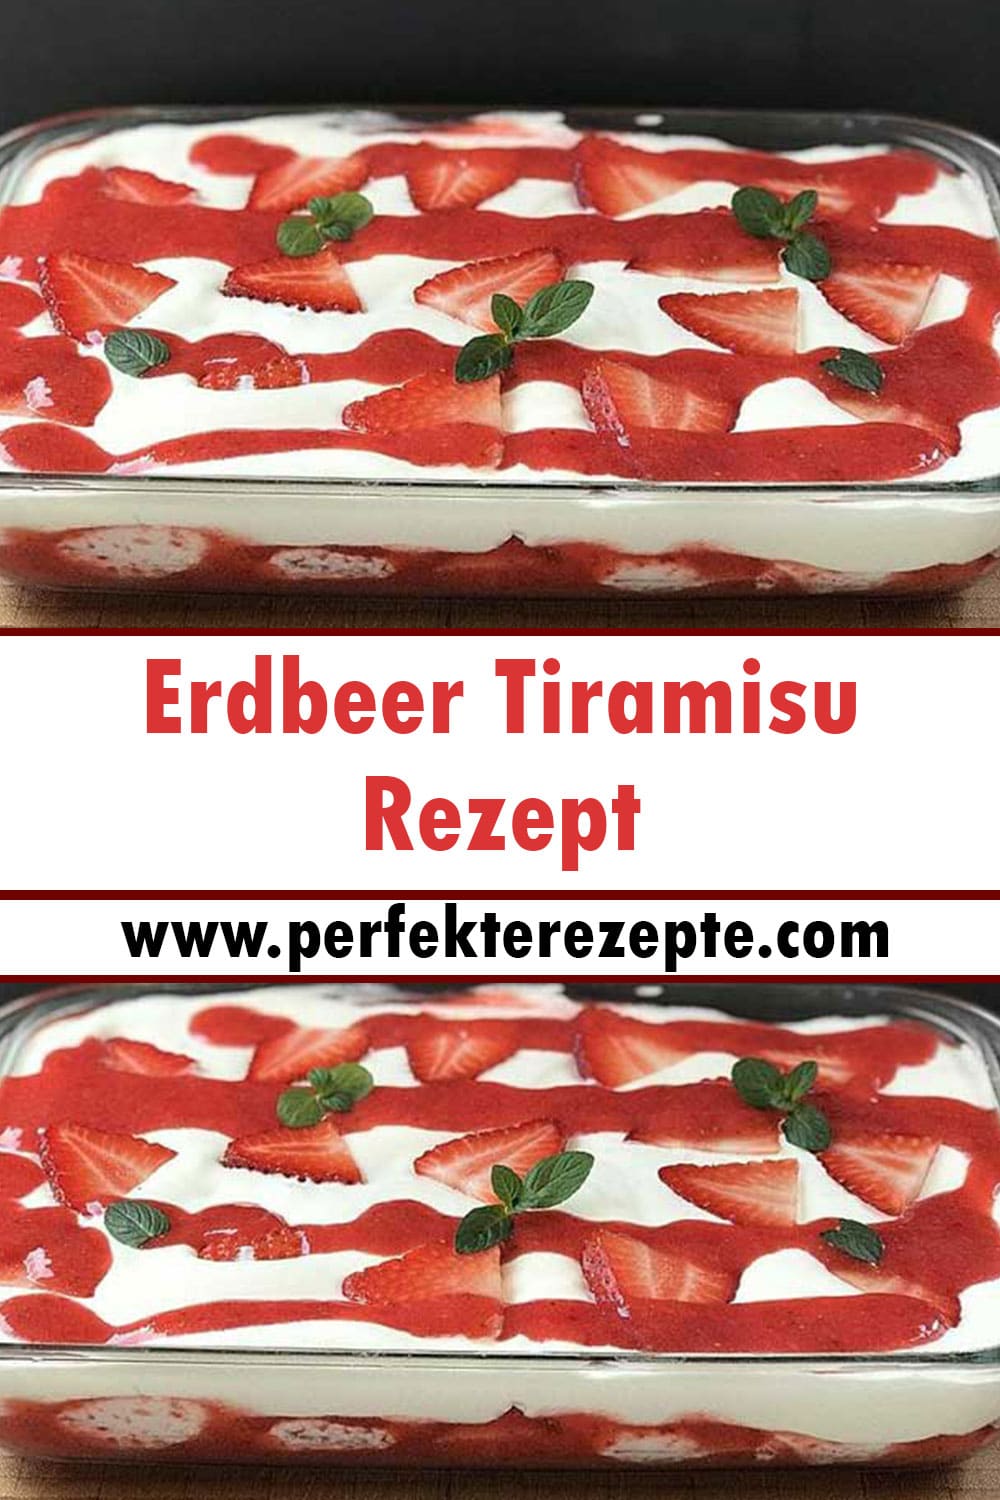 Super Einfach Erdbeer Tiramisu Rezept